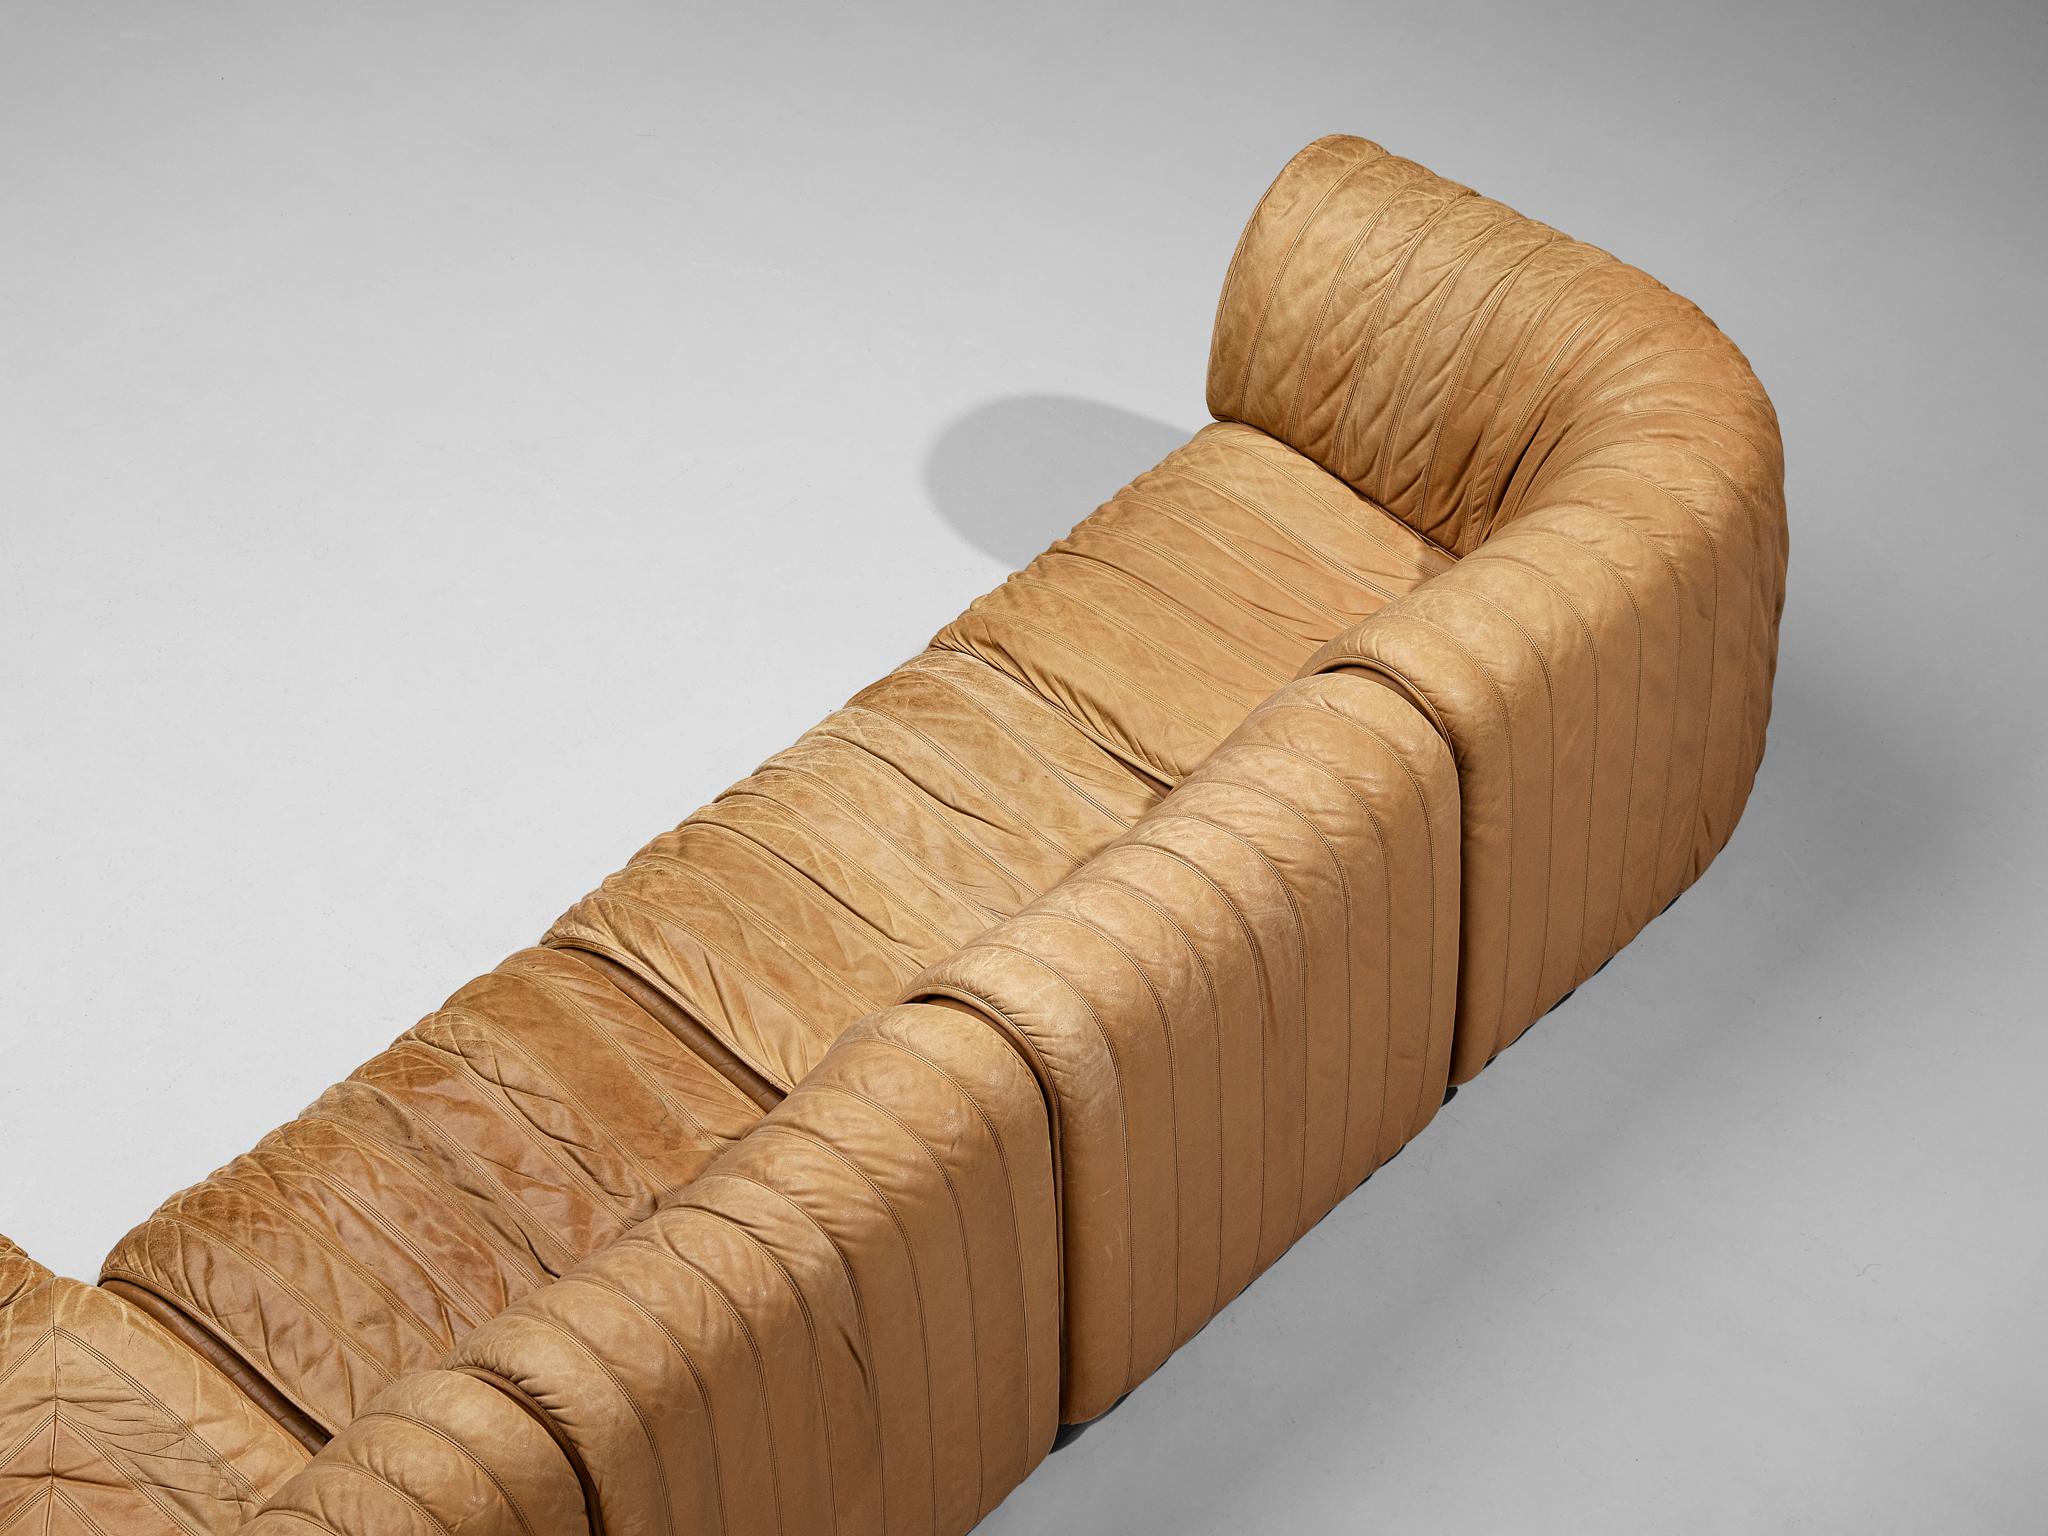 De Sede ‘DS-22’ Modular Sofa in Caramel Leather